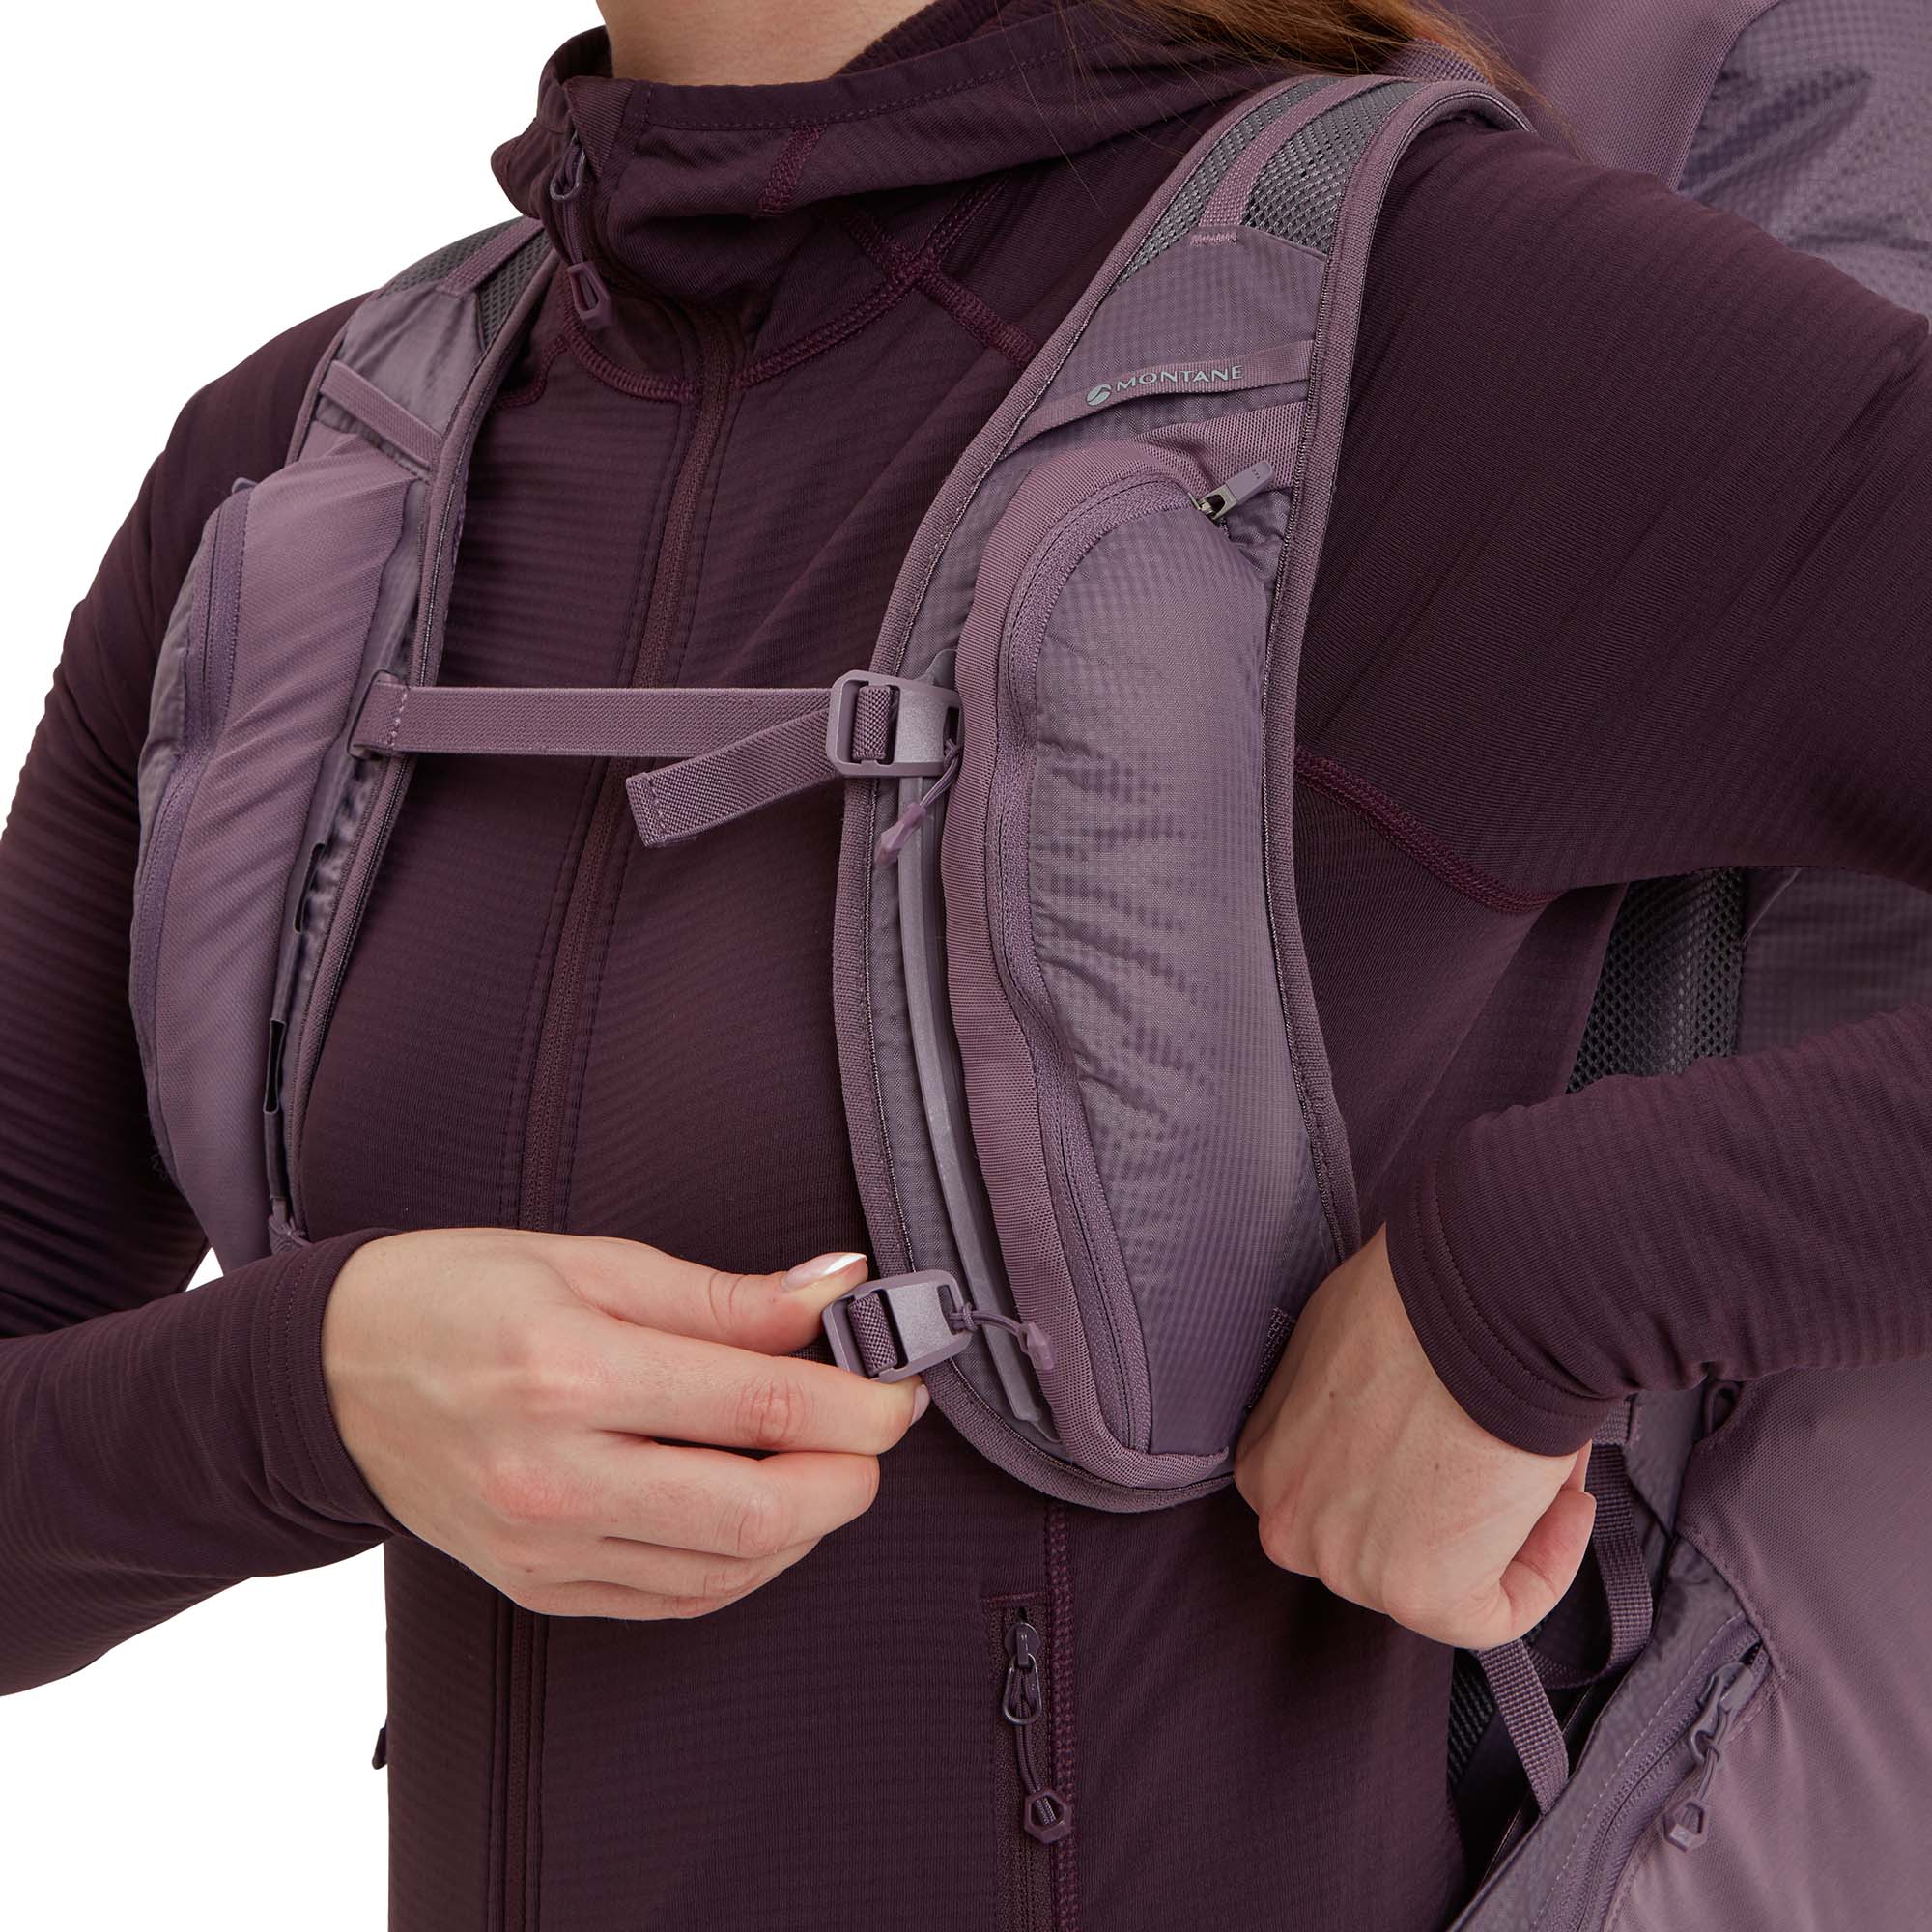 Montane Women's Trailblazer 30 Trekking Backpack